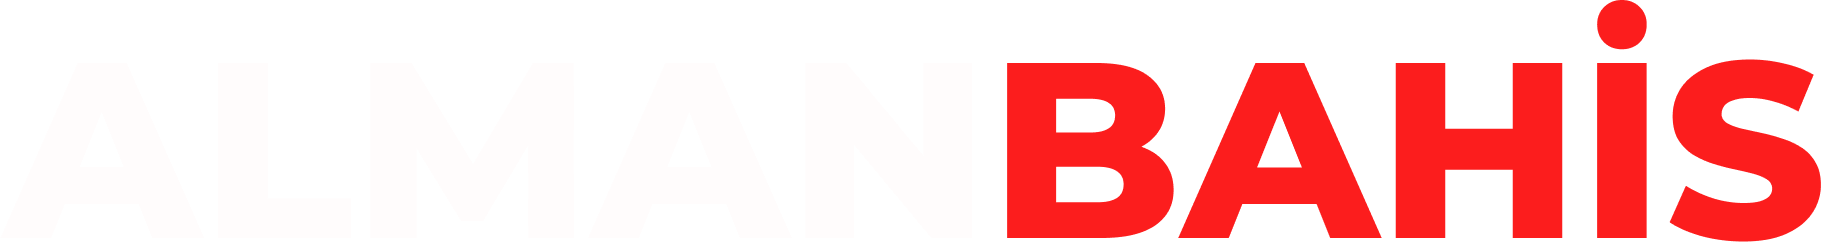 ALMANBAHiS Logo